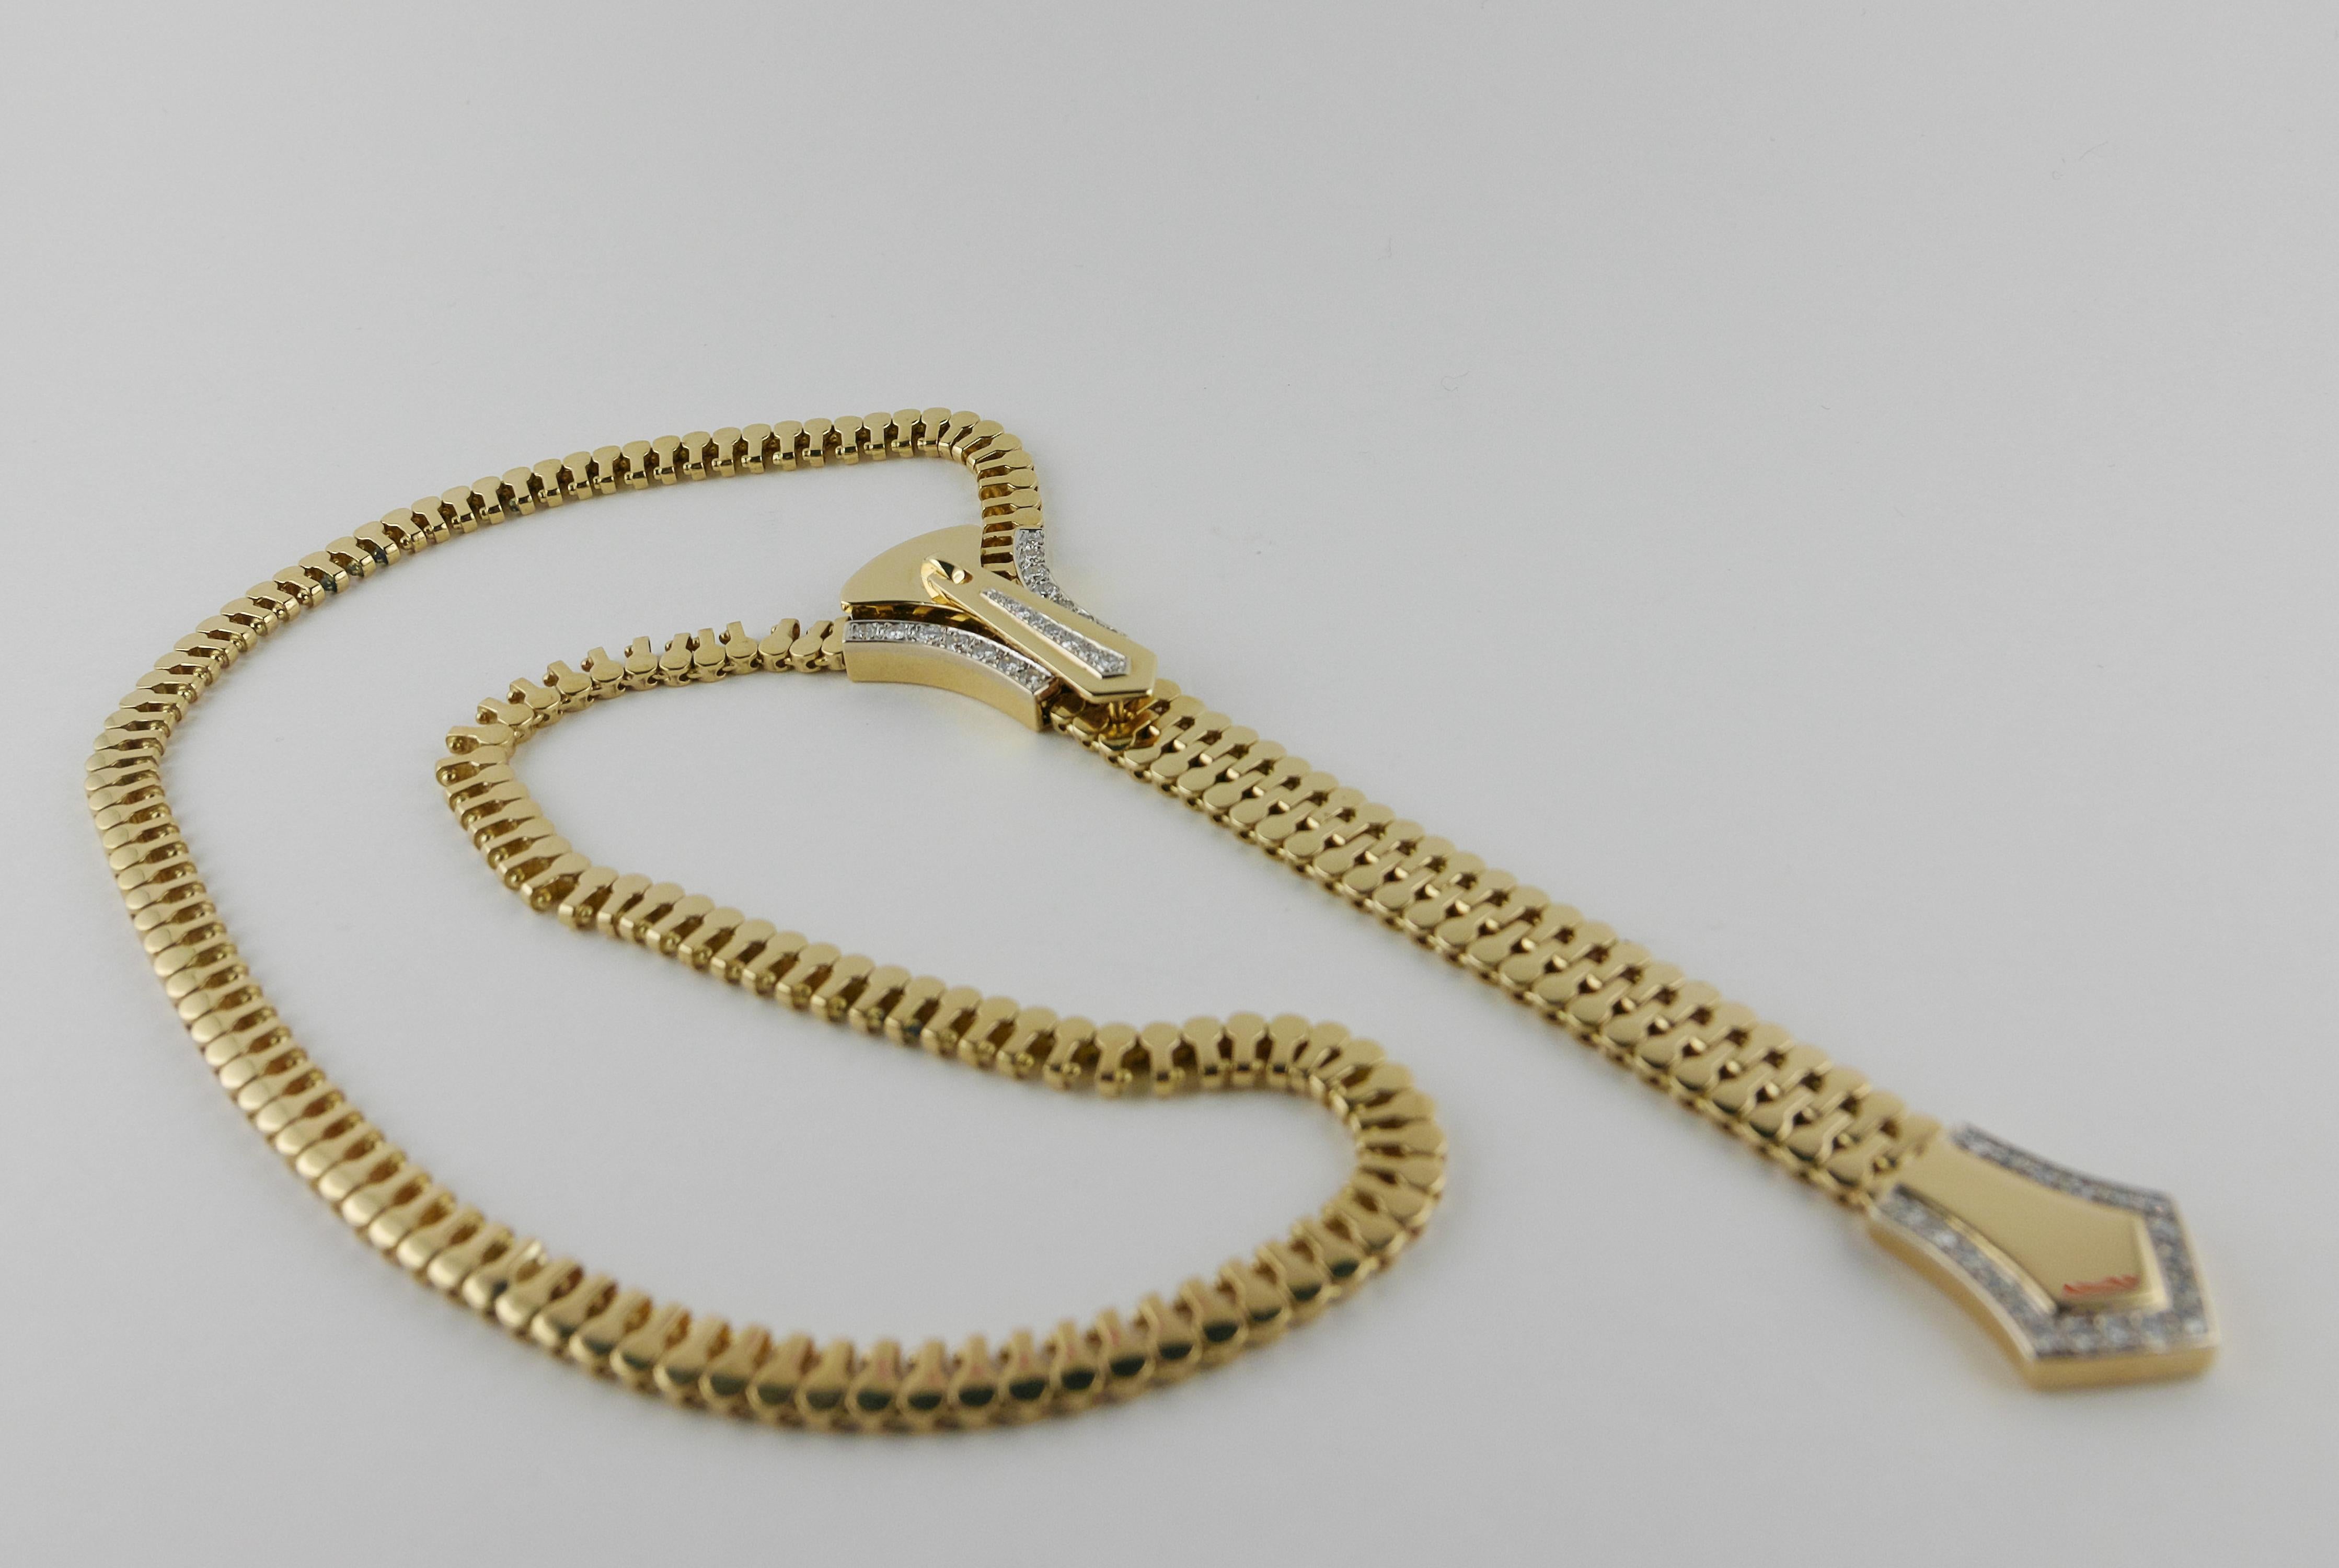 Ce collier italien est formé d'une chaîne à maillons en or jaune 18 carats et est équipé d'un motif de fermeture éclair serti de diamants qui monte et descend le long de la chaîne et peut être fixé dans n'importe quelle position souhaitée, ce qui le